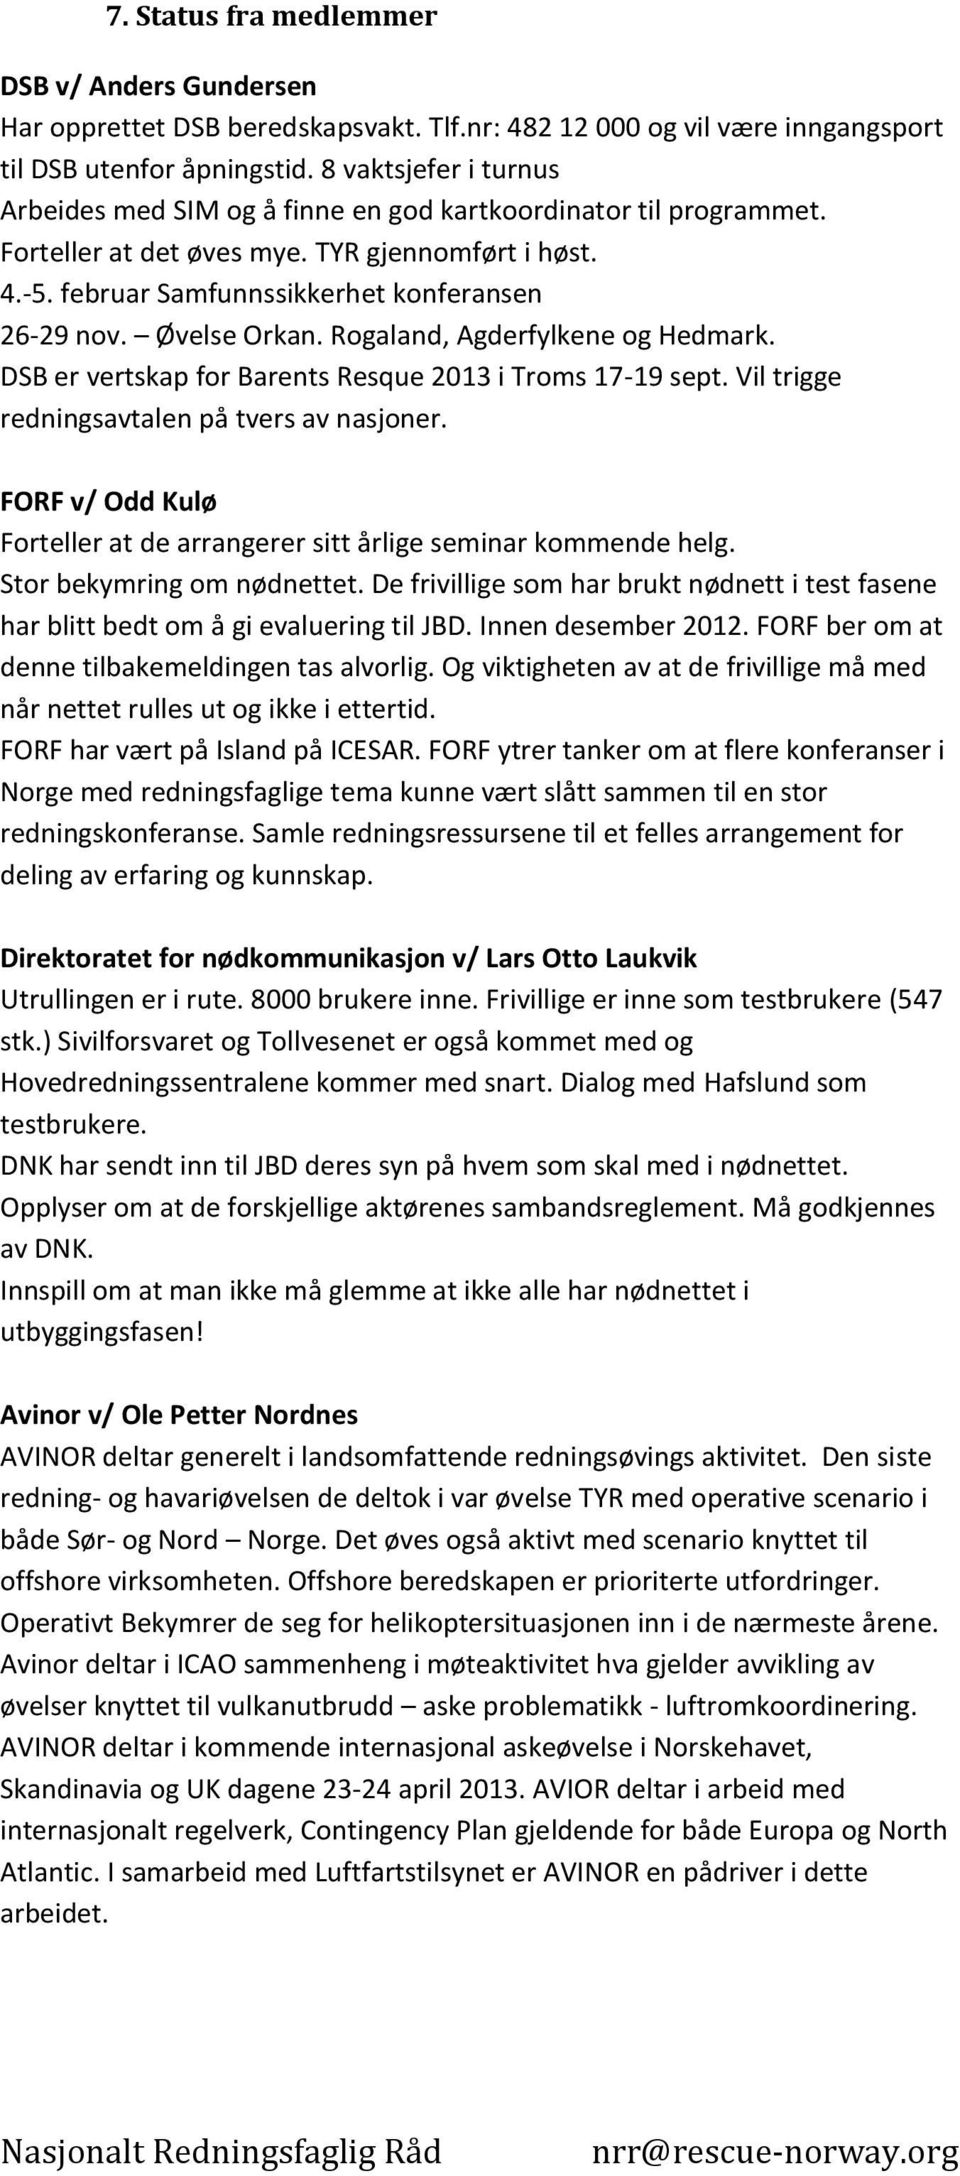 Øvelse Orkan. Rogaland, Agderfylkene og Hedmark. DSB er vertskap for Barents Resque 2013 i Troms 17-19 sept. Vil trigge redningsavtalen på tvers av nasjoner.